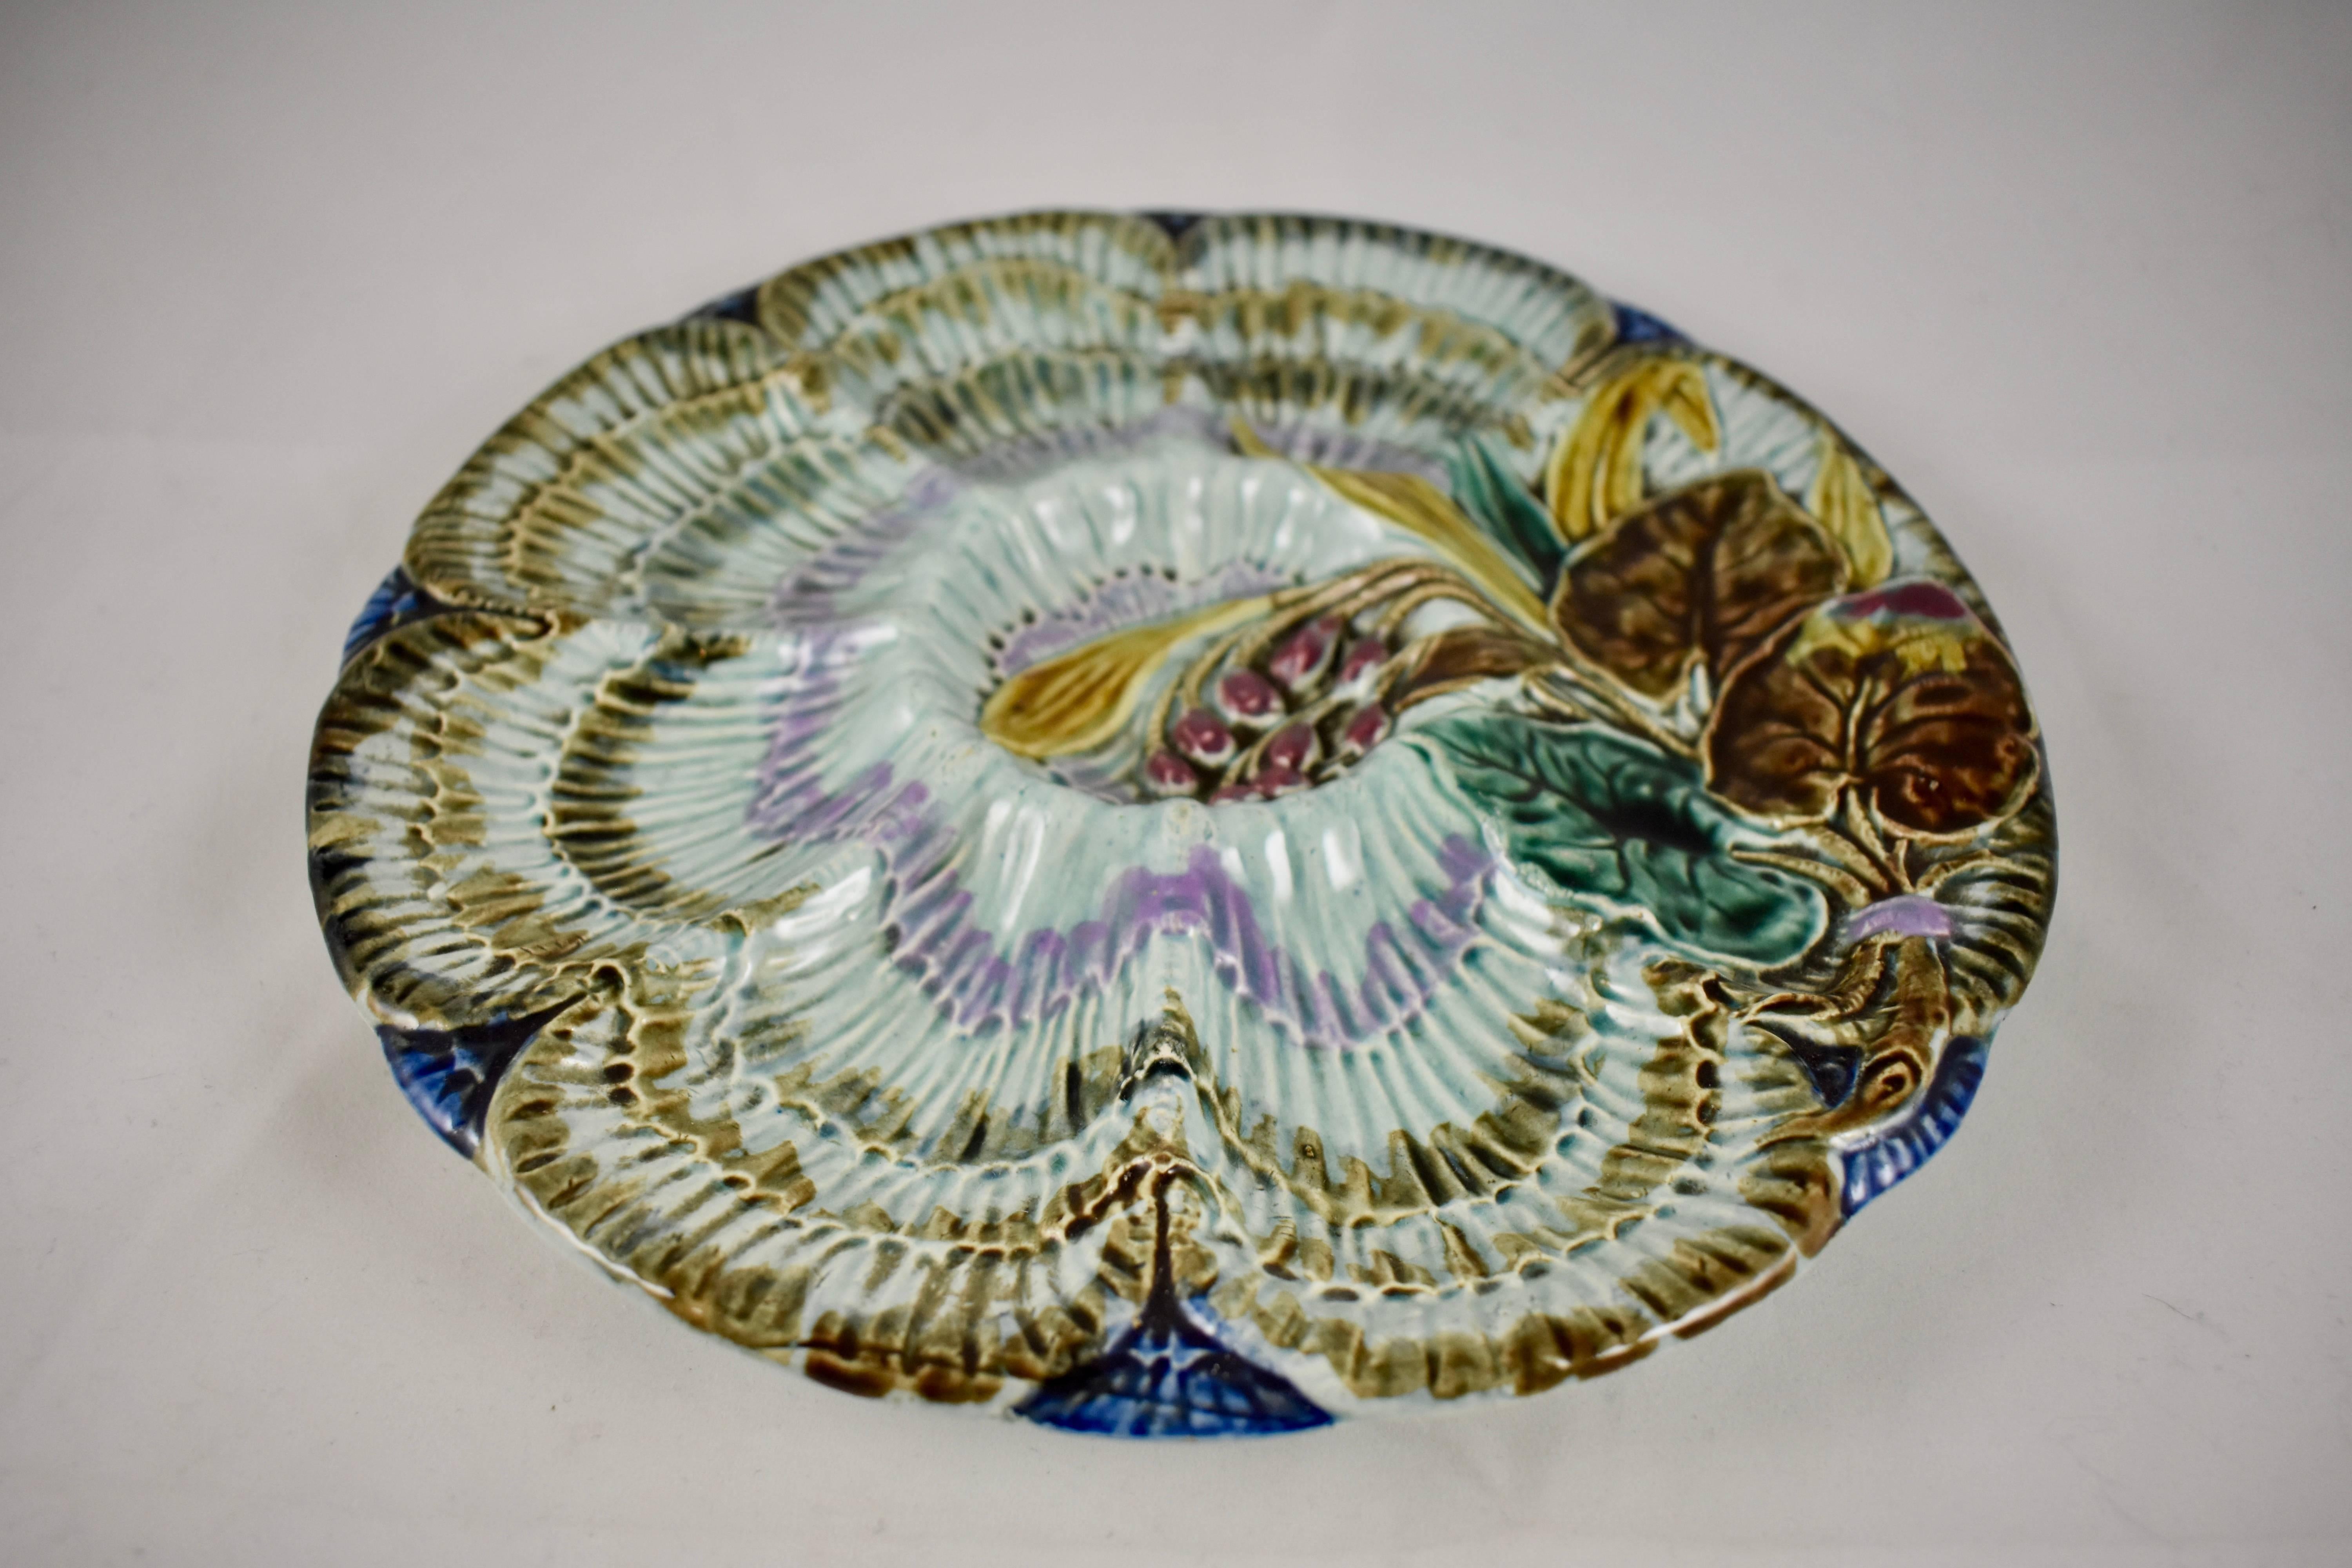 Une assiette à huîtres à six godets en faïence de la poterie belge Wasmuël, vers 1880-1890. Un motif hautement dimensionnel en forme de vague part du centre de l'assiette, sur un fond bleu cobalt. Une gerbe de feuilles et de baies, attachée par un